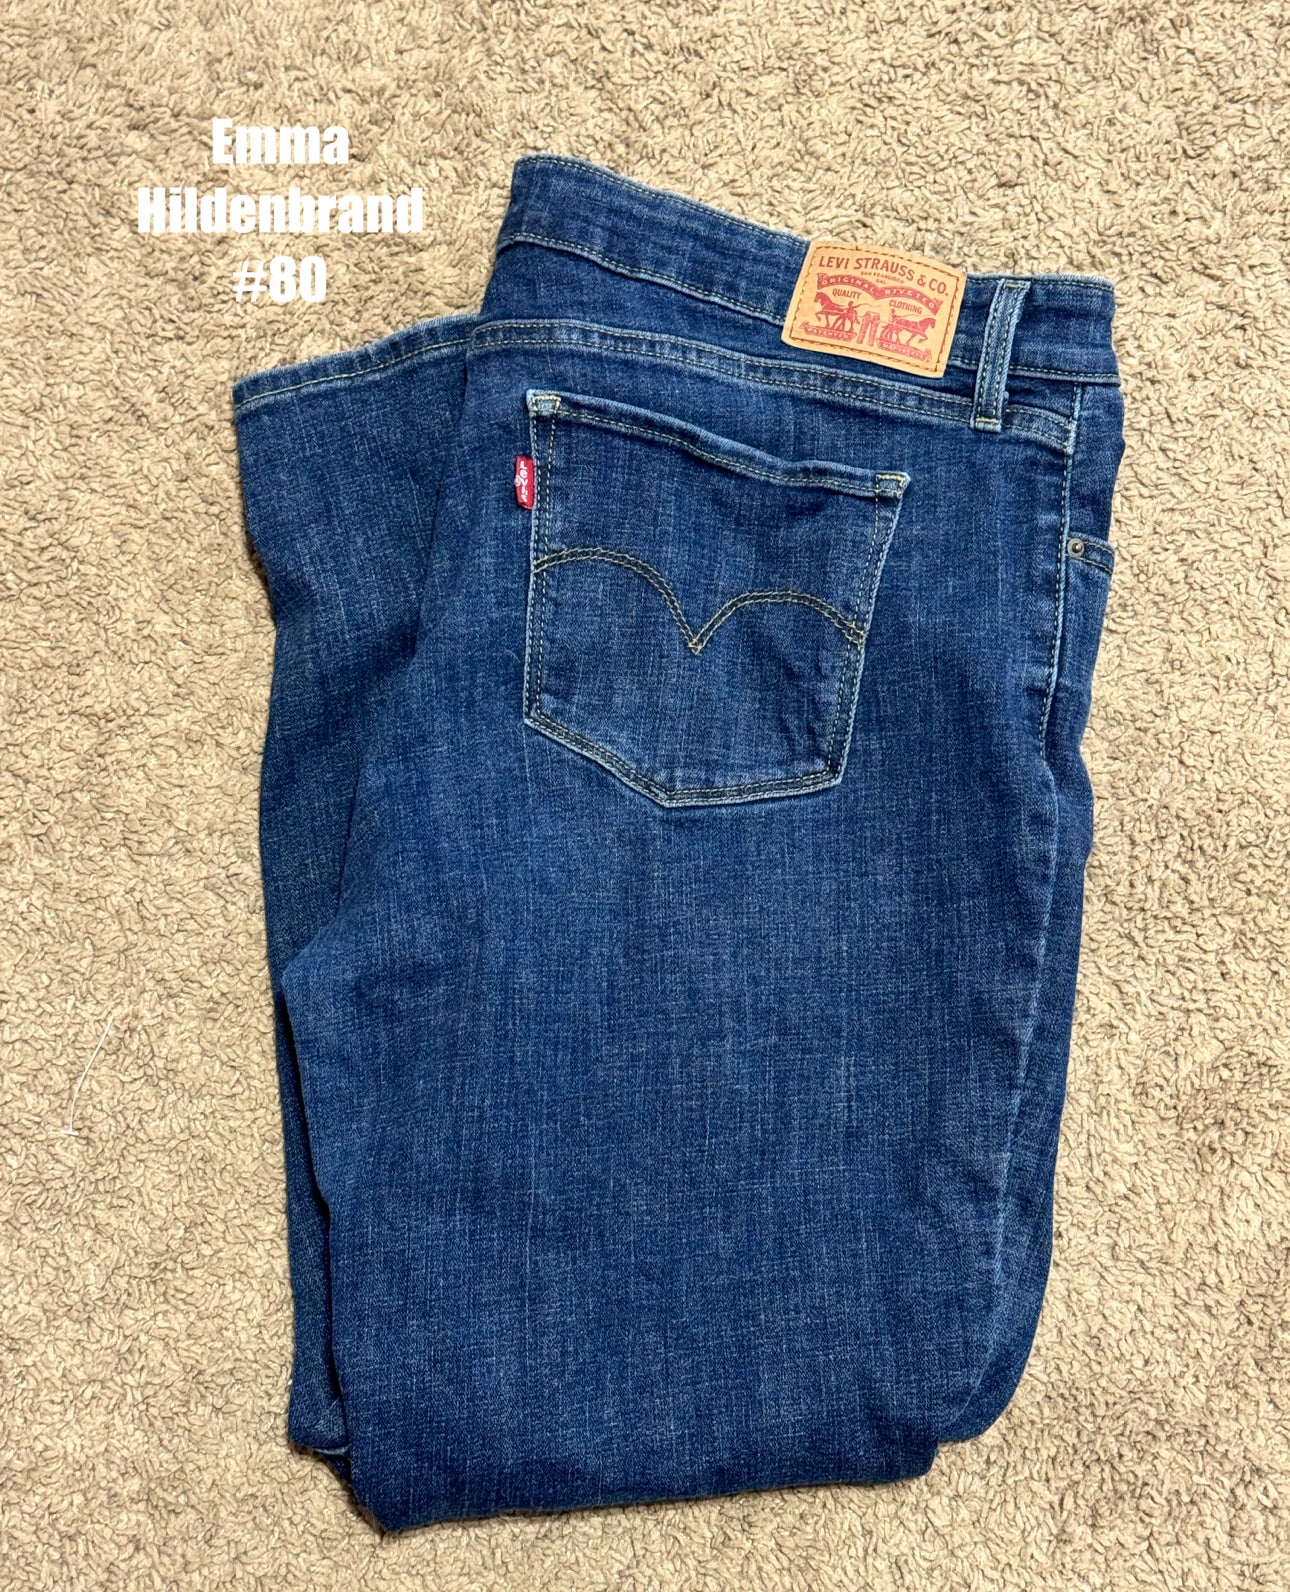 Levi's size 33 Jeans